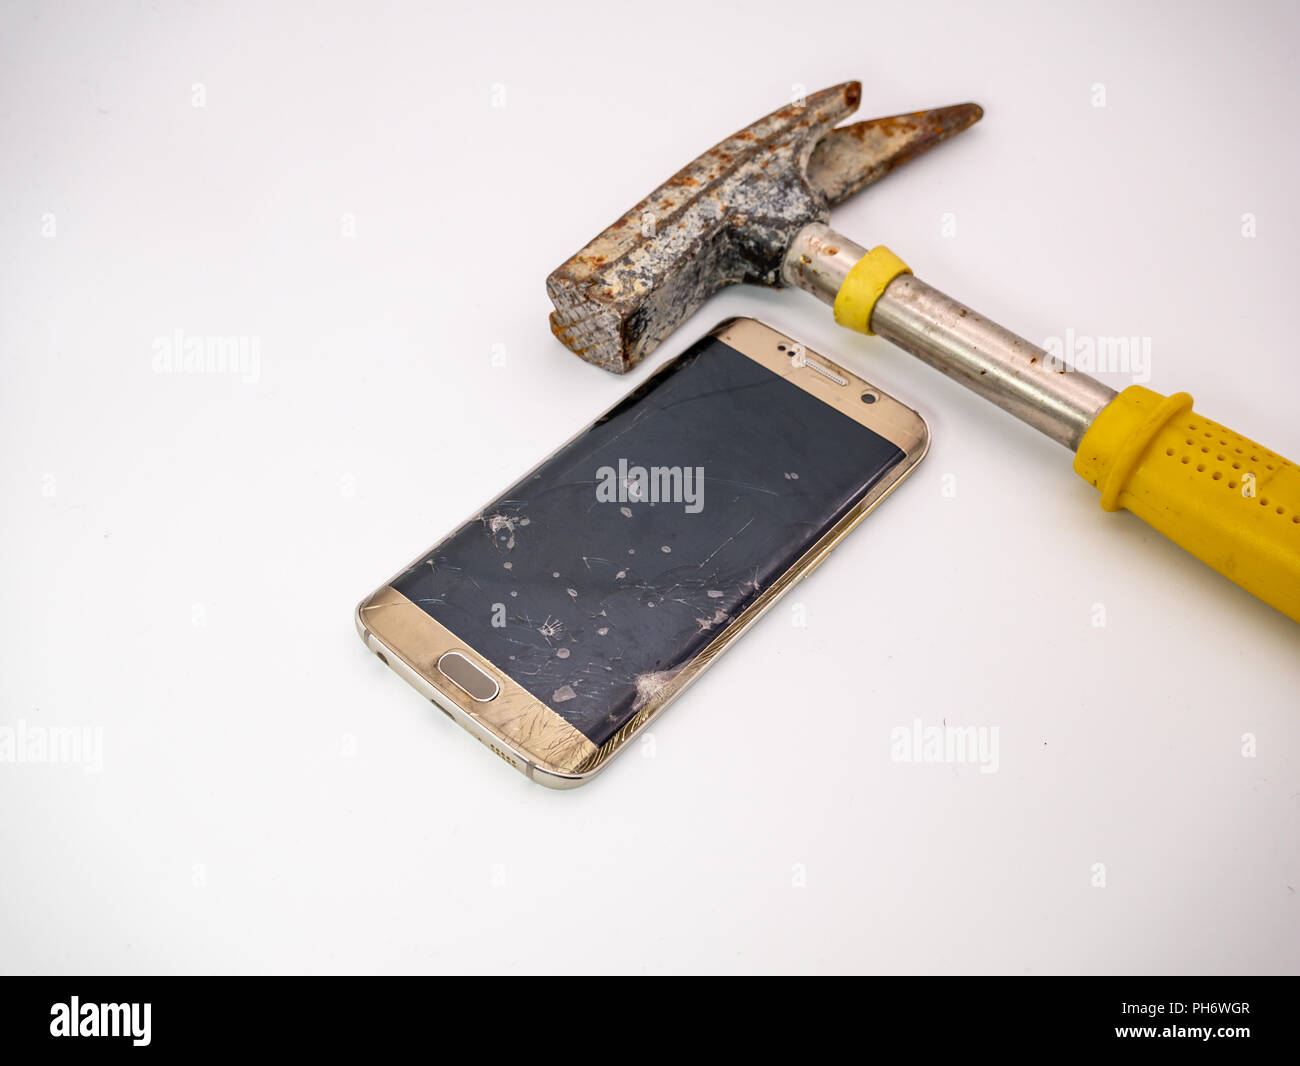 Danneggiato del display dello smartphone con il martello accanto ad esso Foto Stock